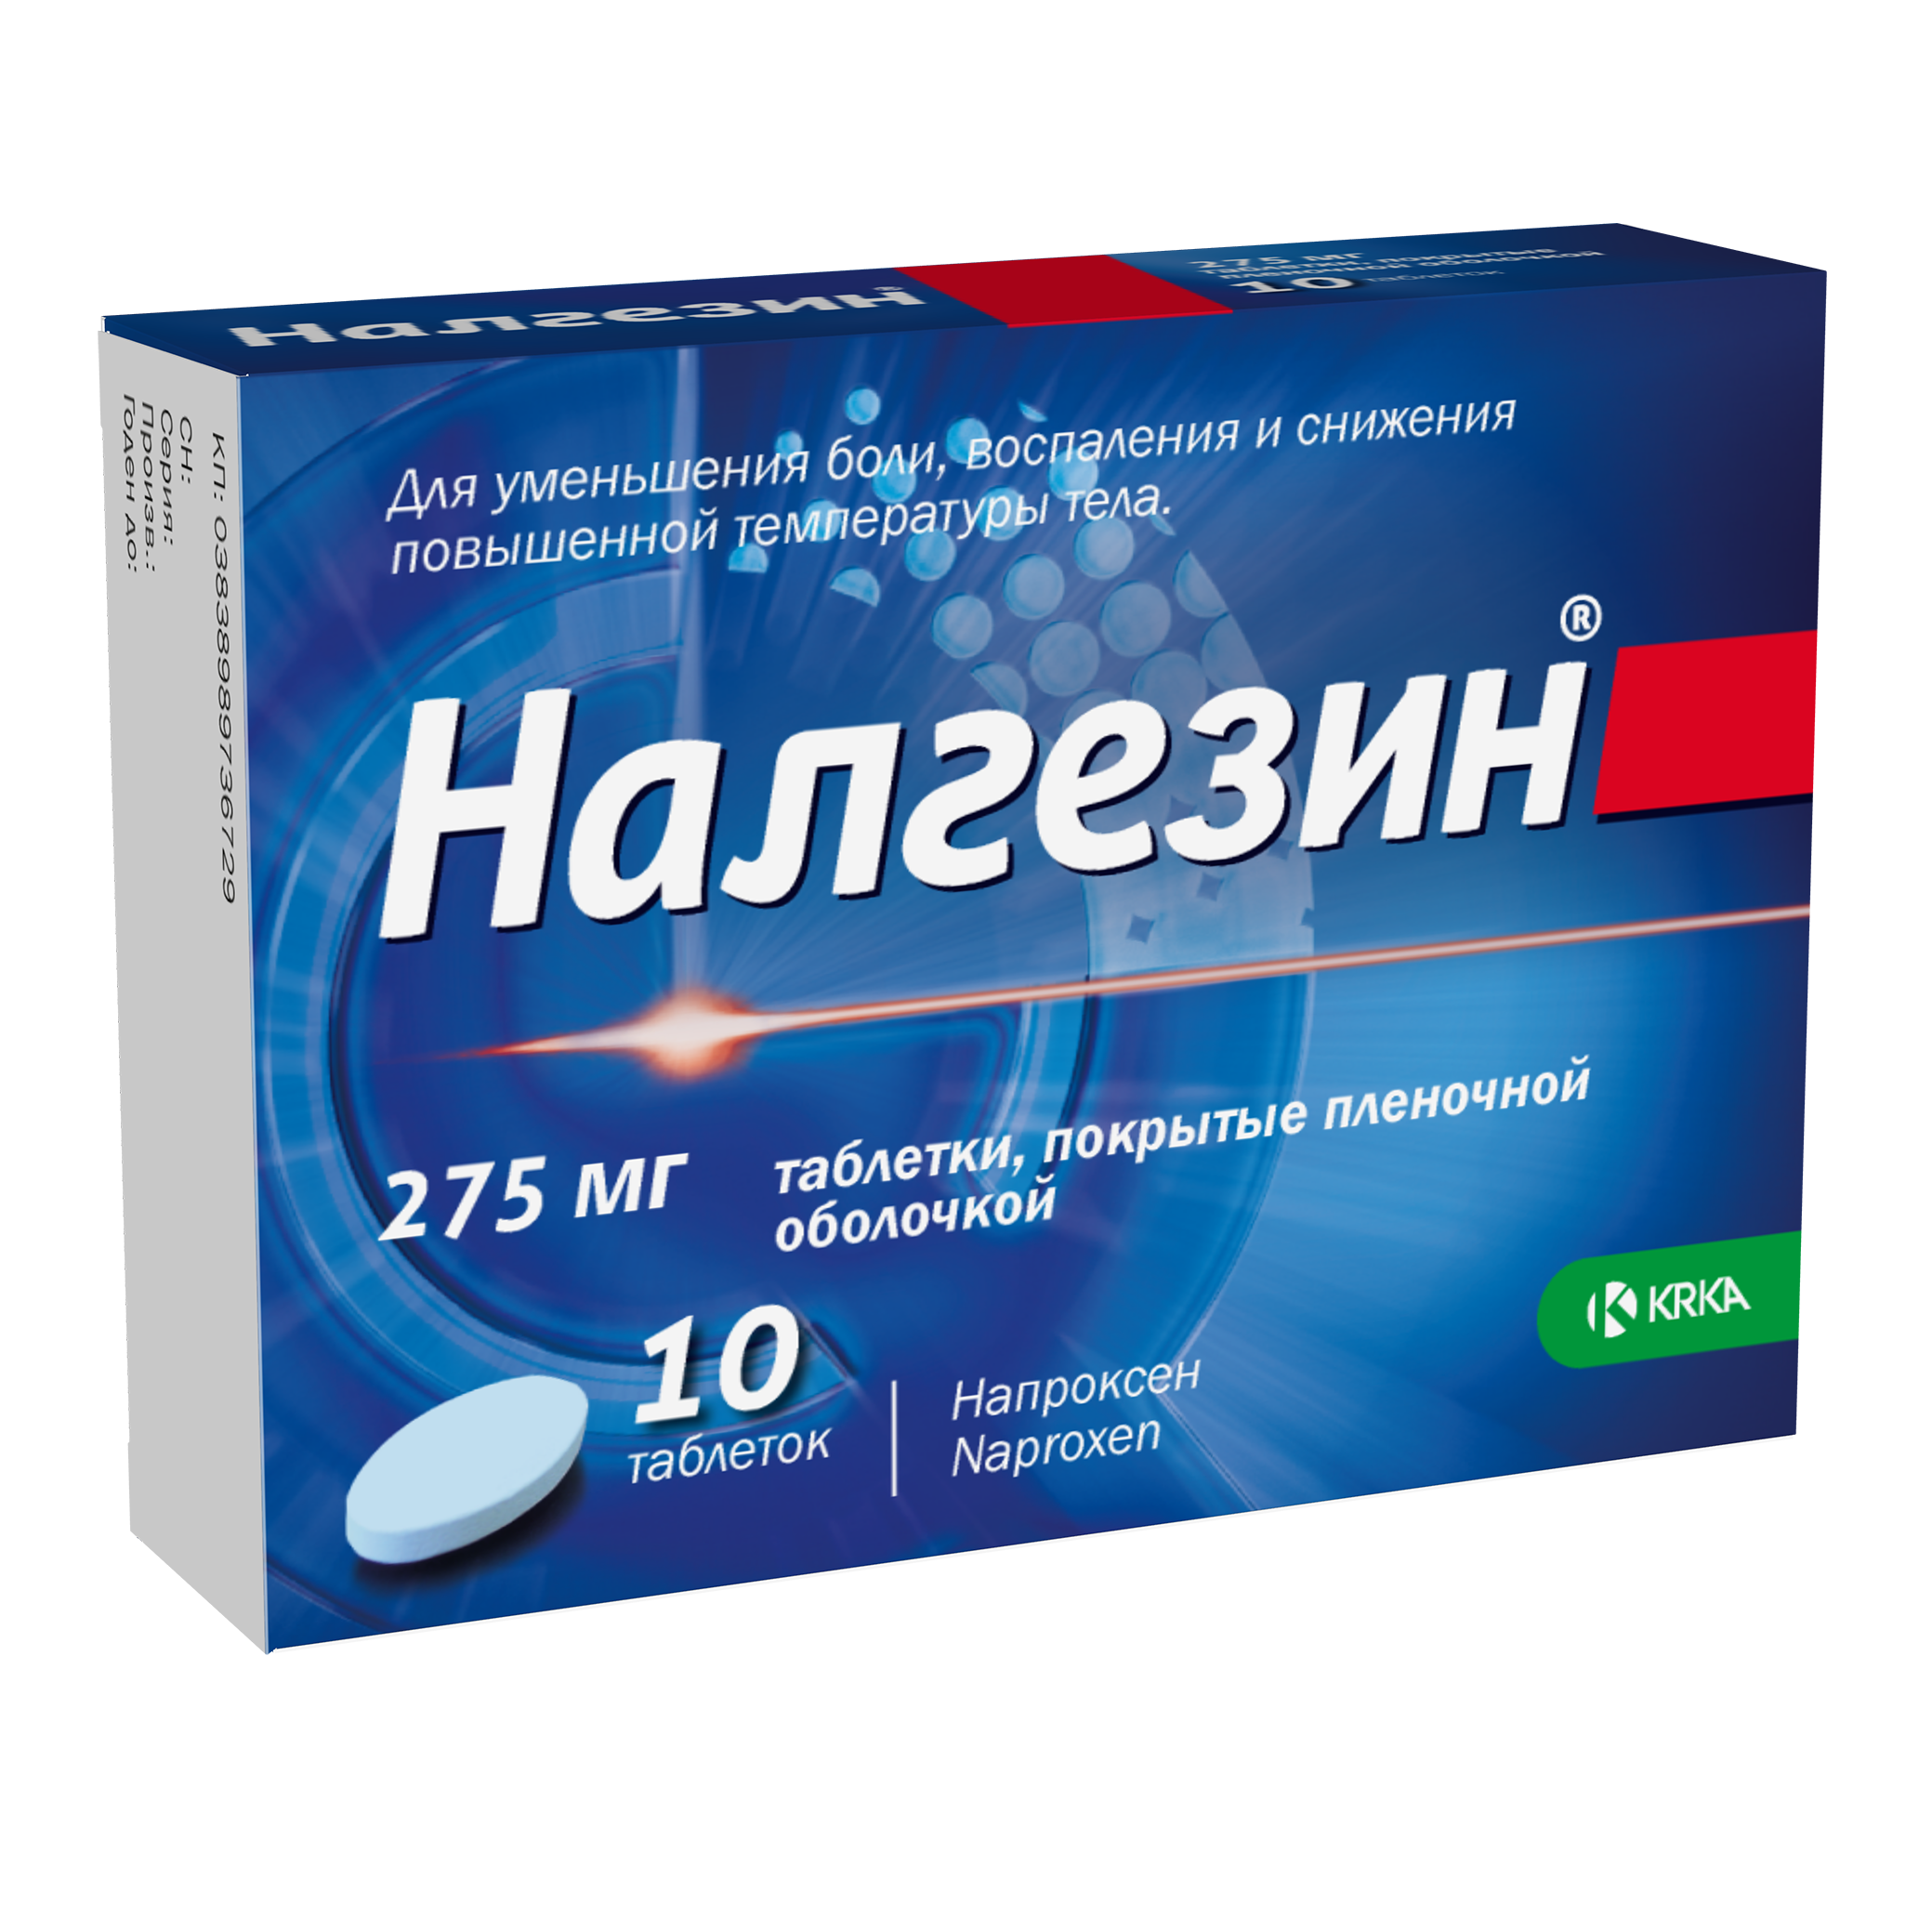 Налгезин, таблетки покрыт. плен. об. 275 мг, 10 шт. налгезин таб 275мг 10